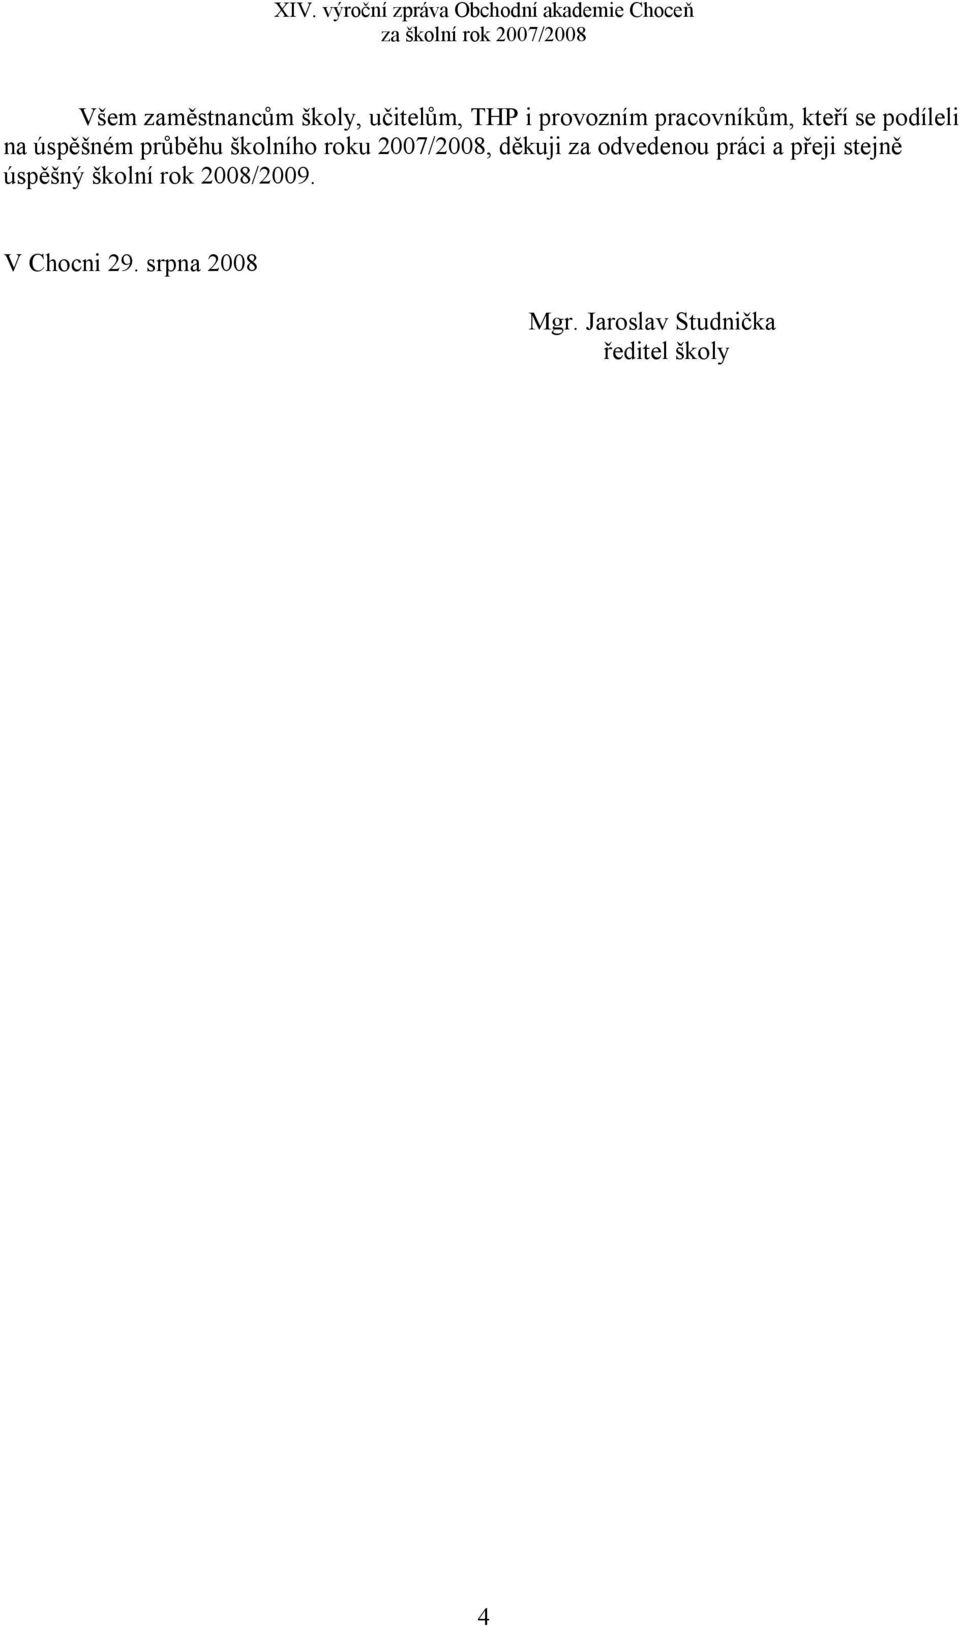 XIV. výroční zpráva Obchodní akademie Choceň za školní rok 2007/2008. XIV.  výroční zpráva. Obchodní akademie Choceň - PDF Free Download